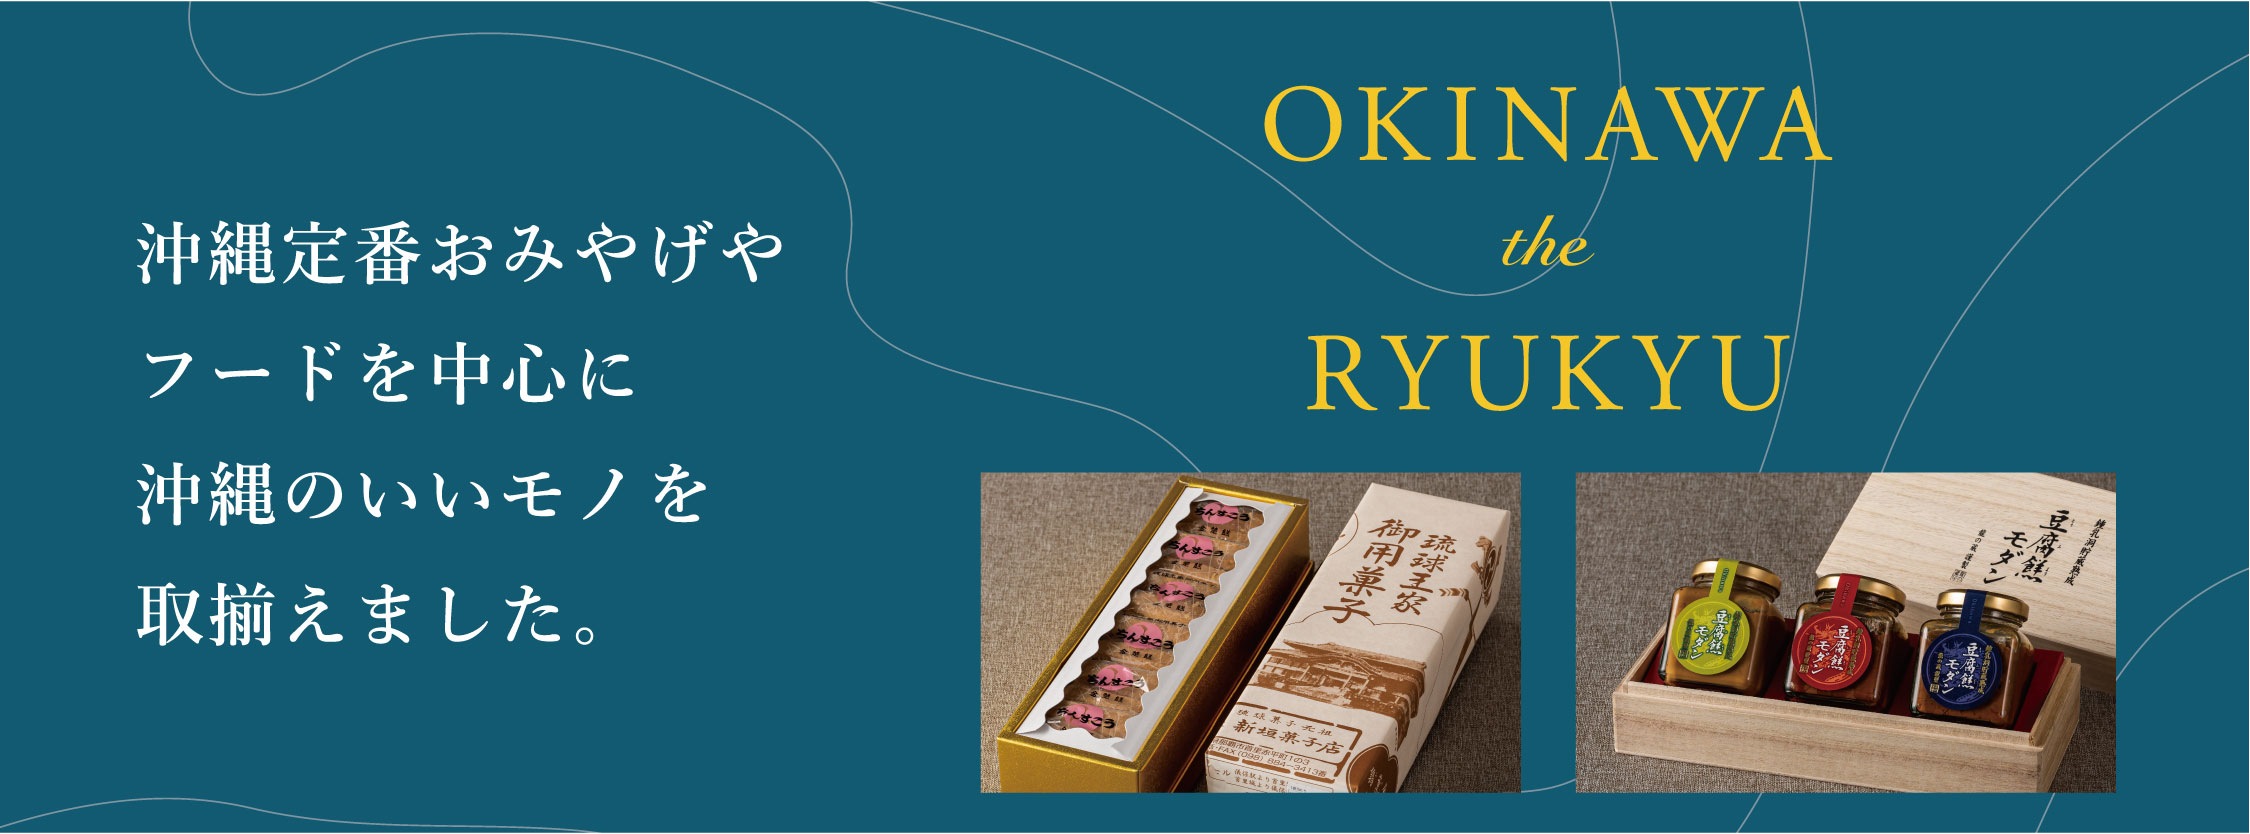 OKINAWA the RYUKYU